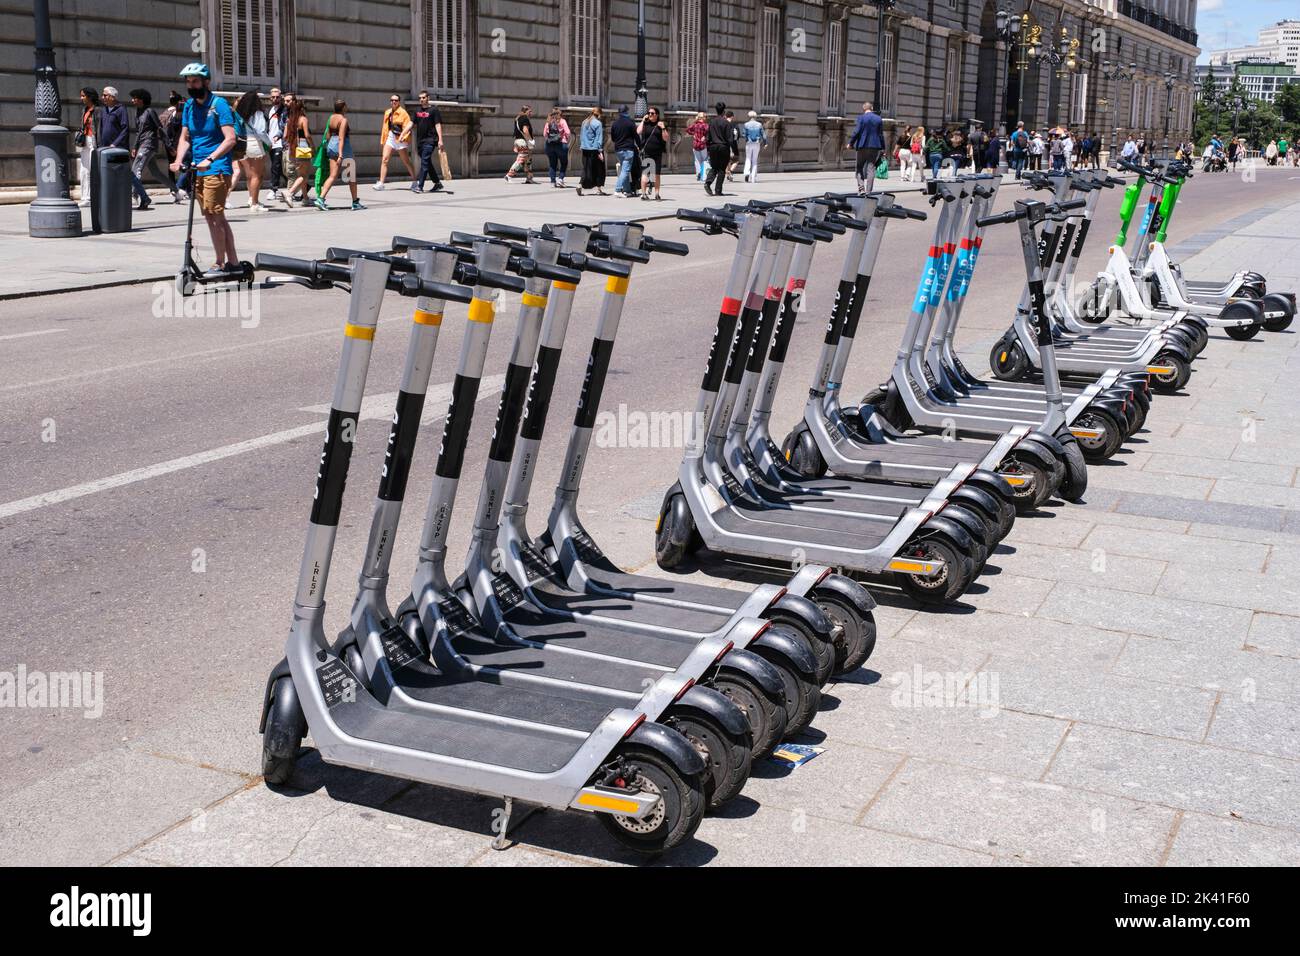 Espagne, Madrid. Location de scooters motorisés, en face du Palais Royal. Banque D'Images